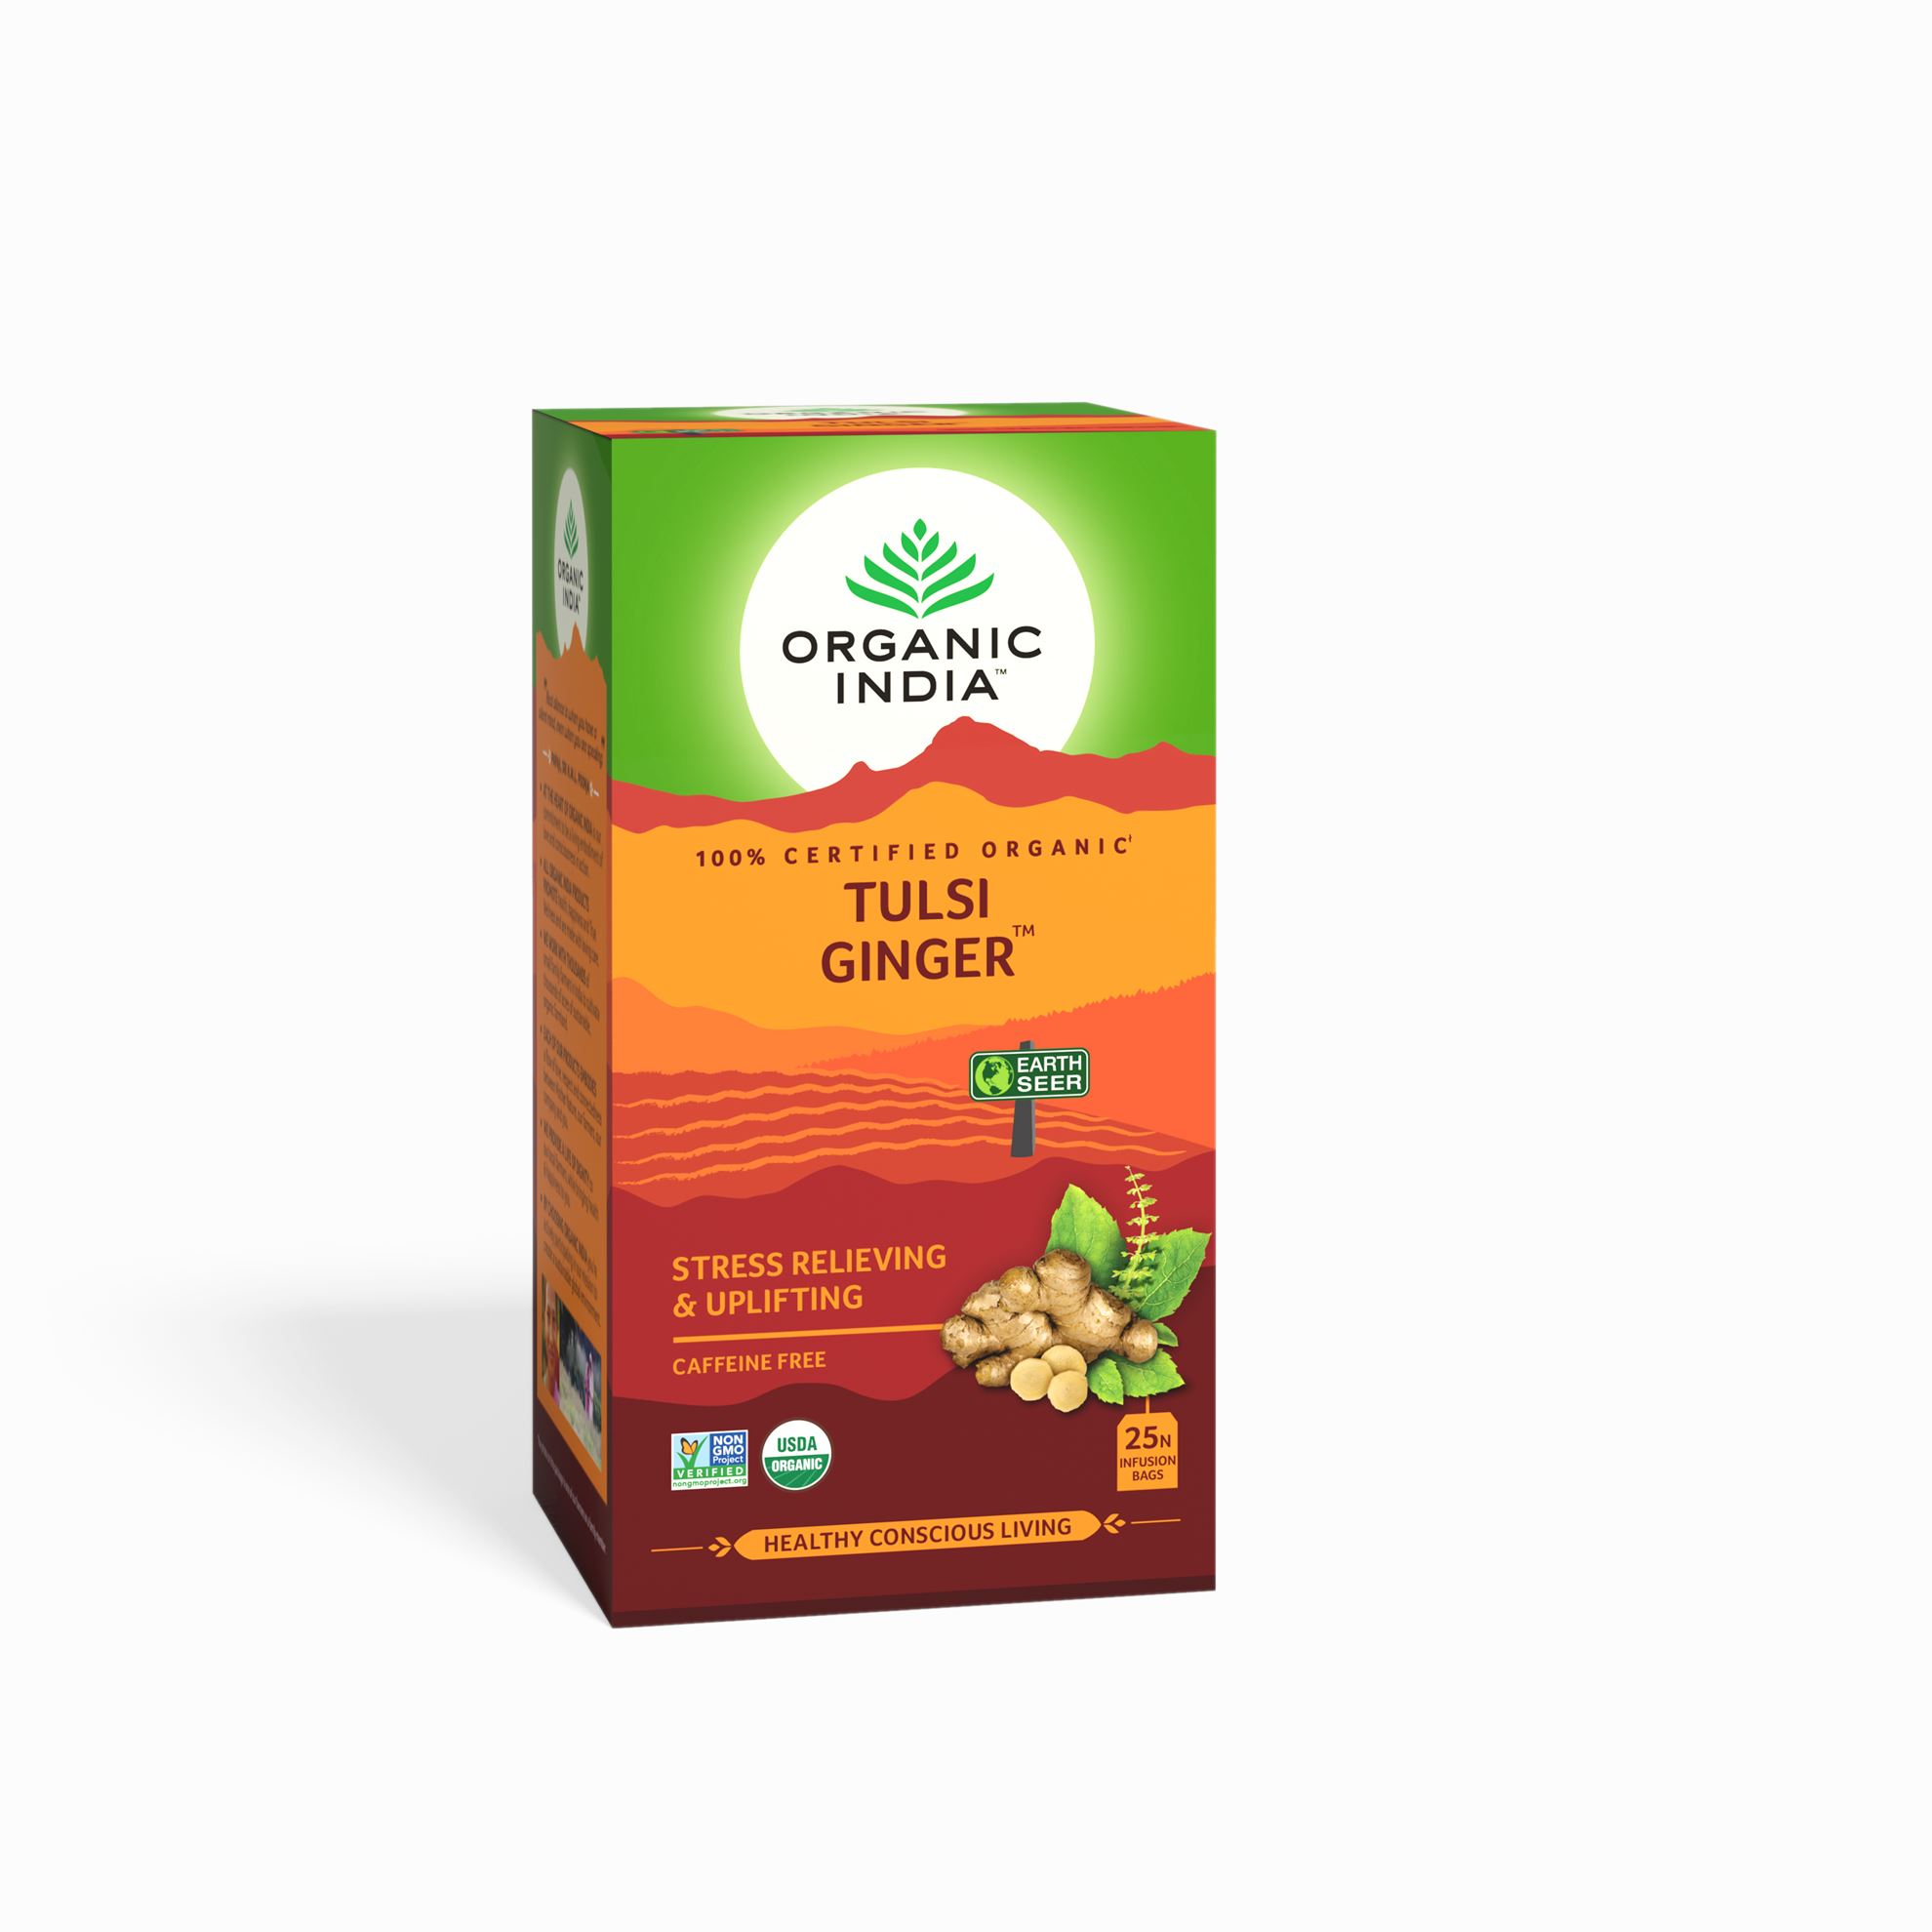 TULSI GINGER, Organic India (ТУЛСИ ИМБИРЬ, чай, антистресс и подъём, Органик Индия), 25 пакетиков.